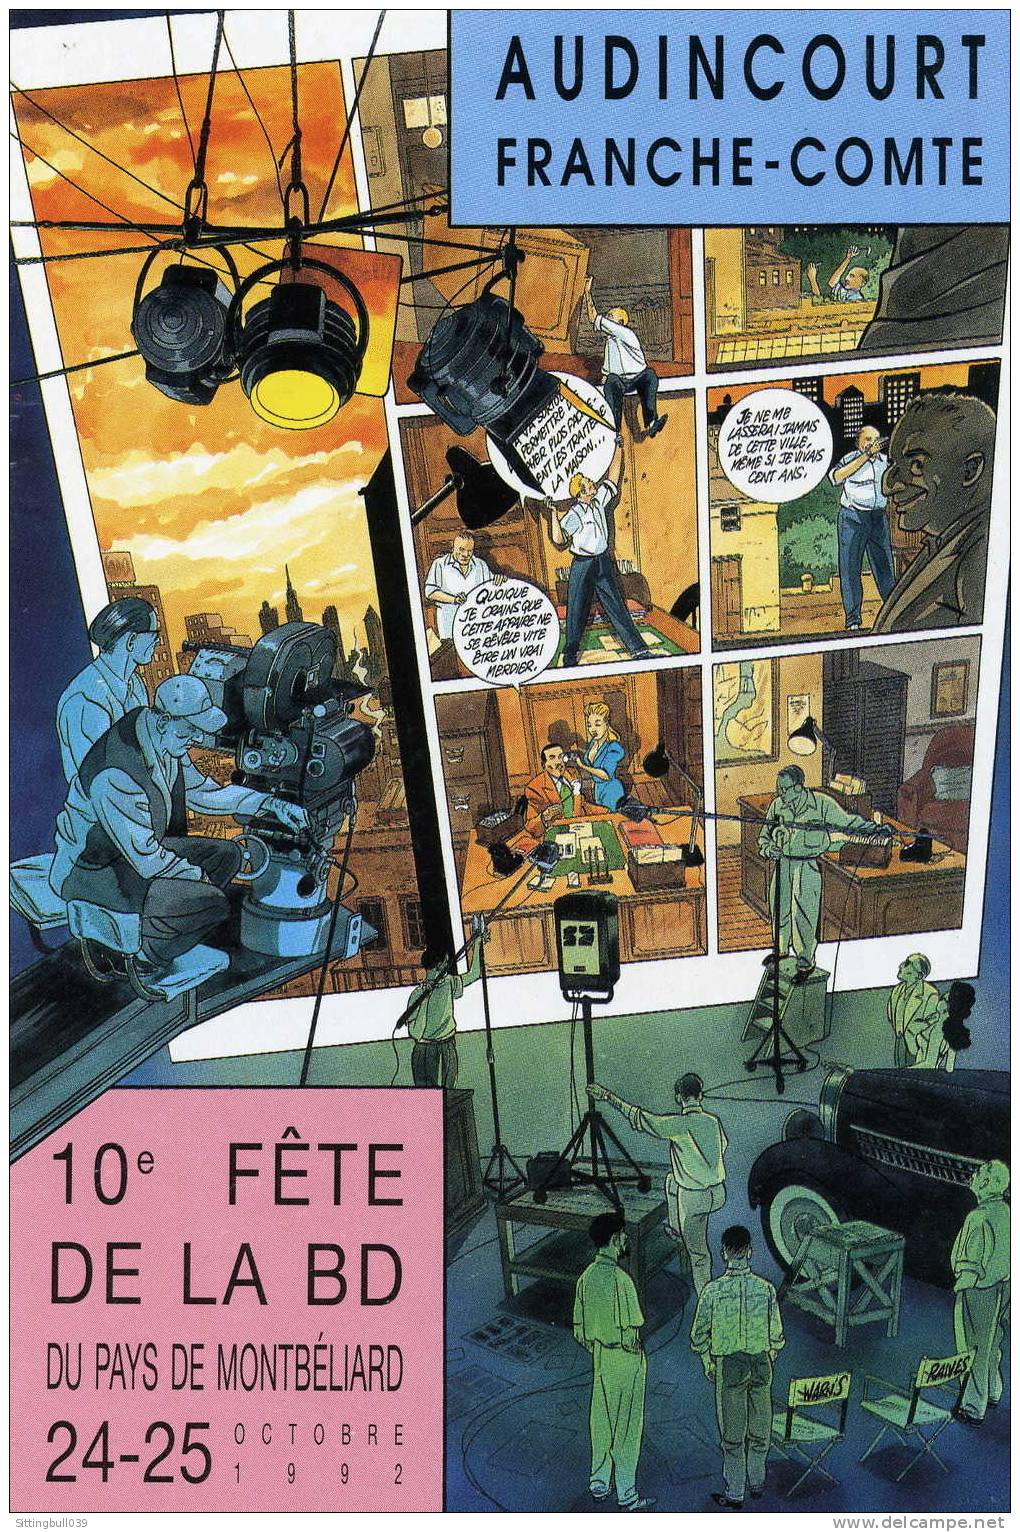 WARNAUT'S ET RAIVES. CARTE POSTALE DE LA 10ème FÊTE DE LA BD A AUDINCOURT 1992. DESSIN INEDIT. - Postcards